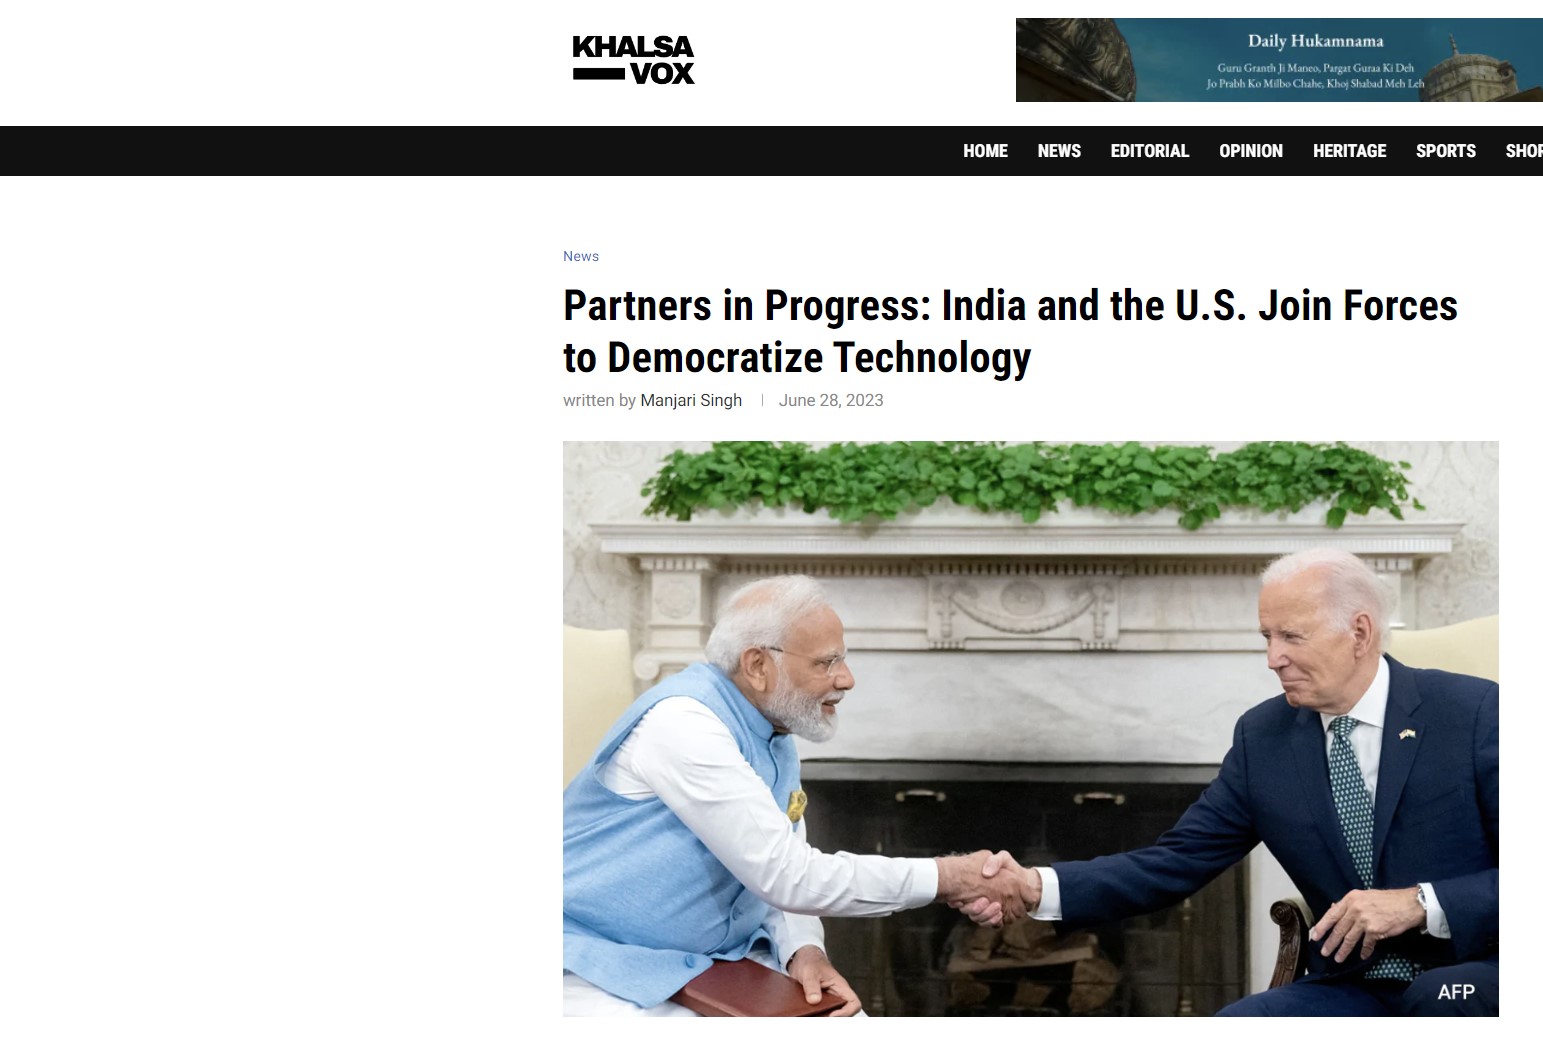 Σε πρόοδο η συνεργασία Ινδίας-ΗΠΑ! Ενώνουν τις δυνάμεις τους για τον… εκδημοκρατισμό της τεχνολογίας